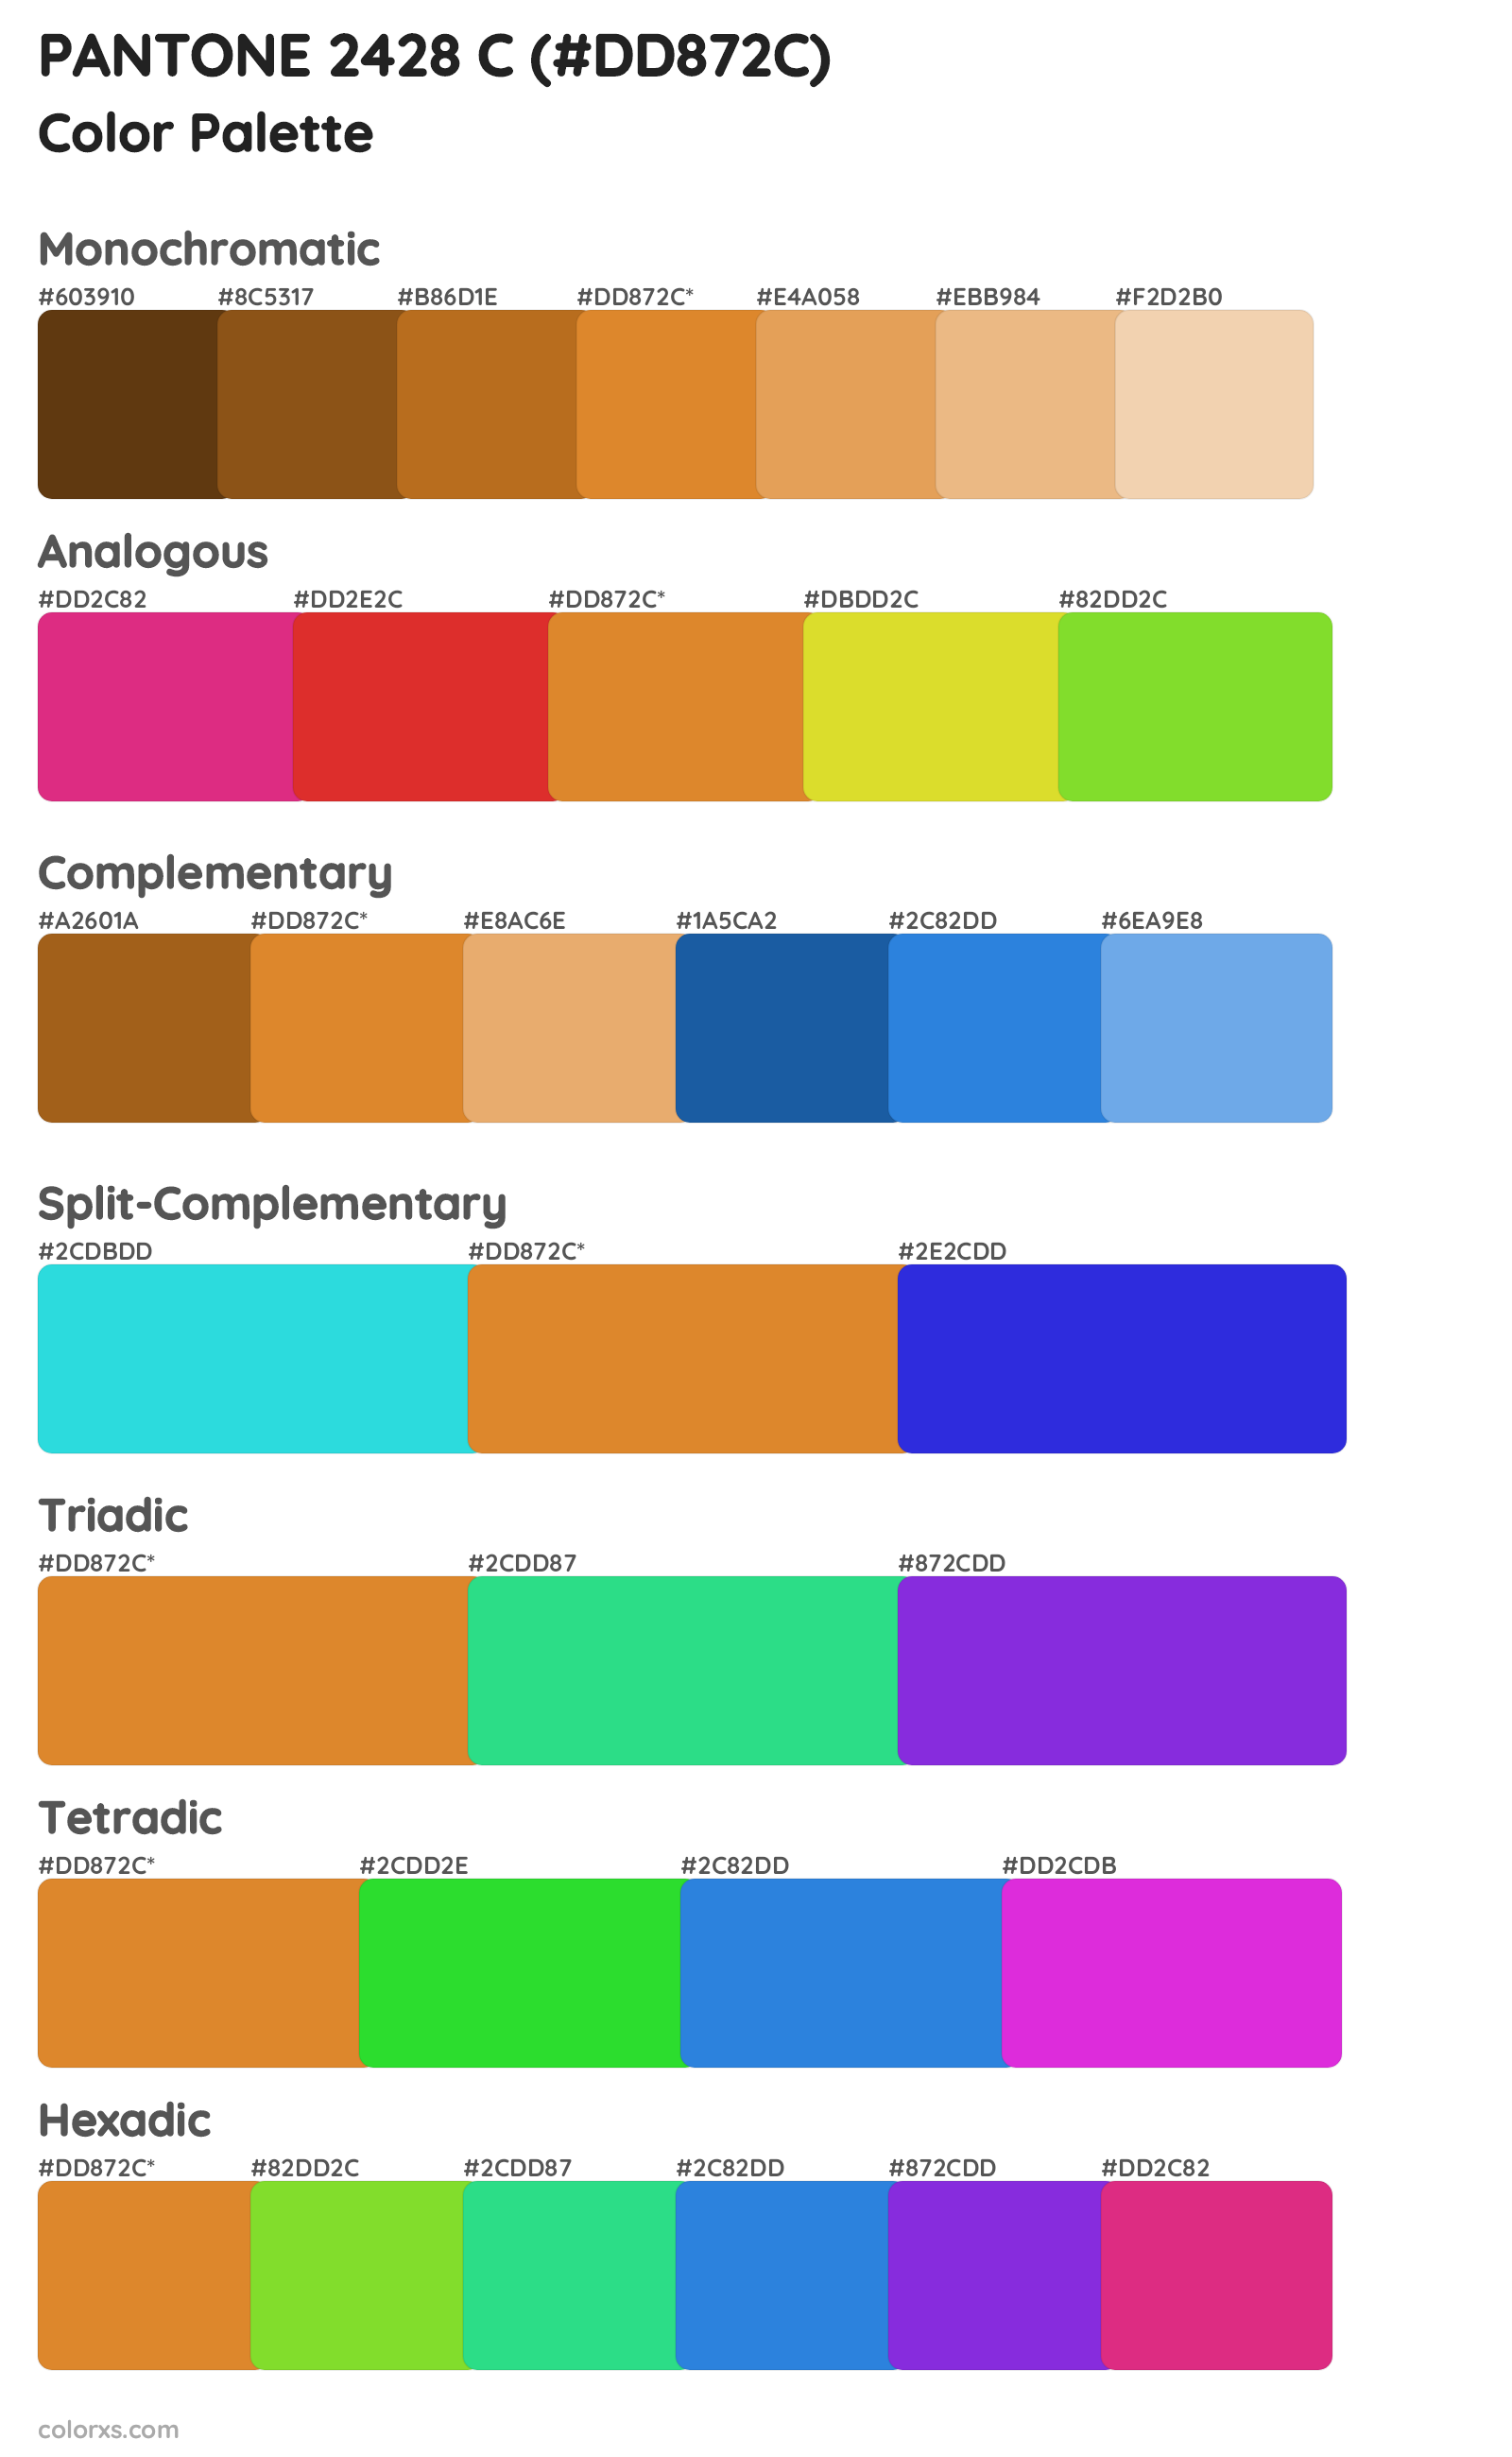 PANTONE 2428 C Color Scheme Palettes